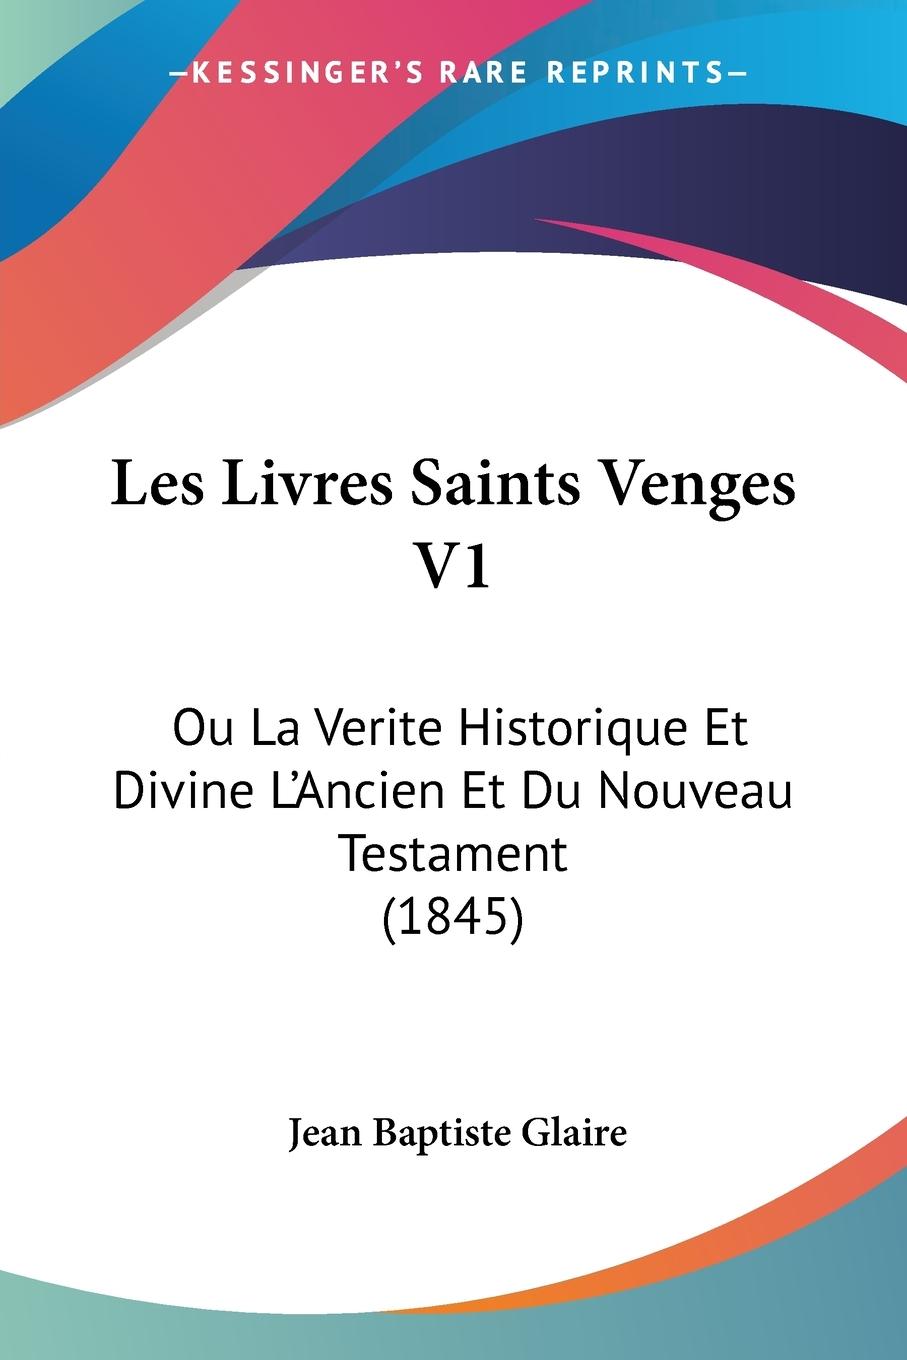 Les Livres Saints Venges V1 - Glaire, Jean Baptiste